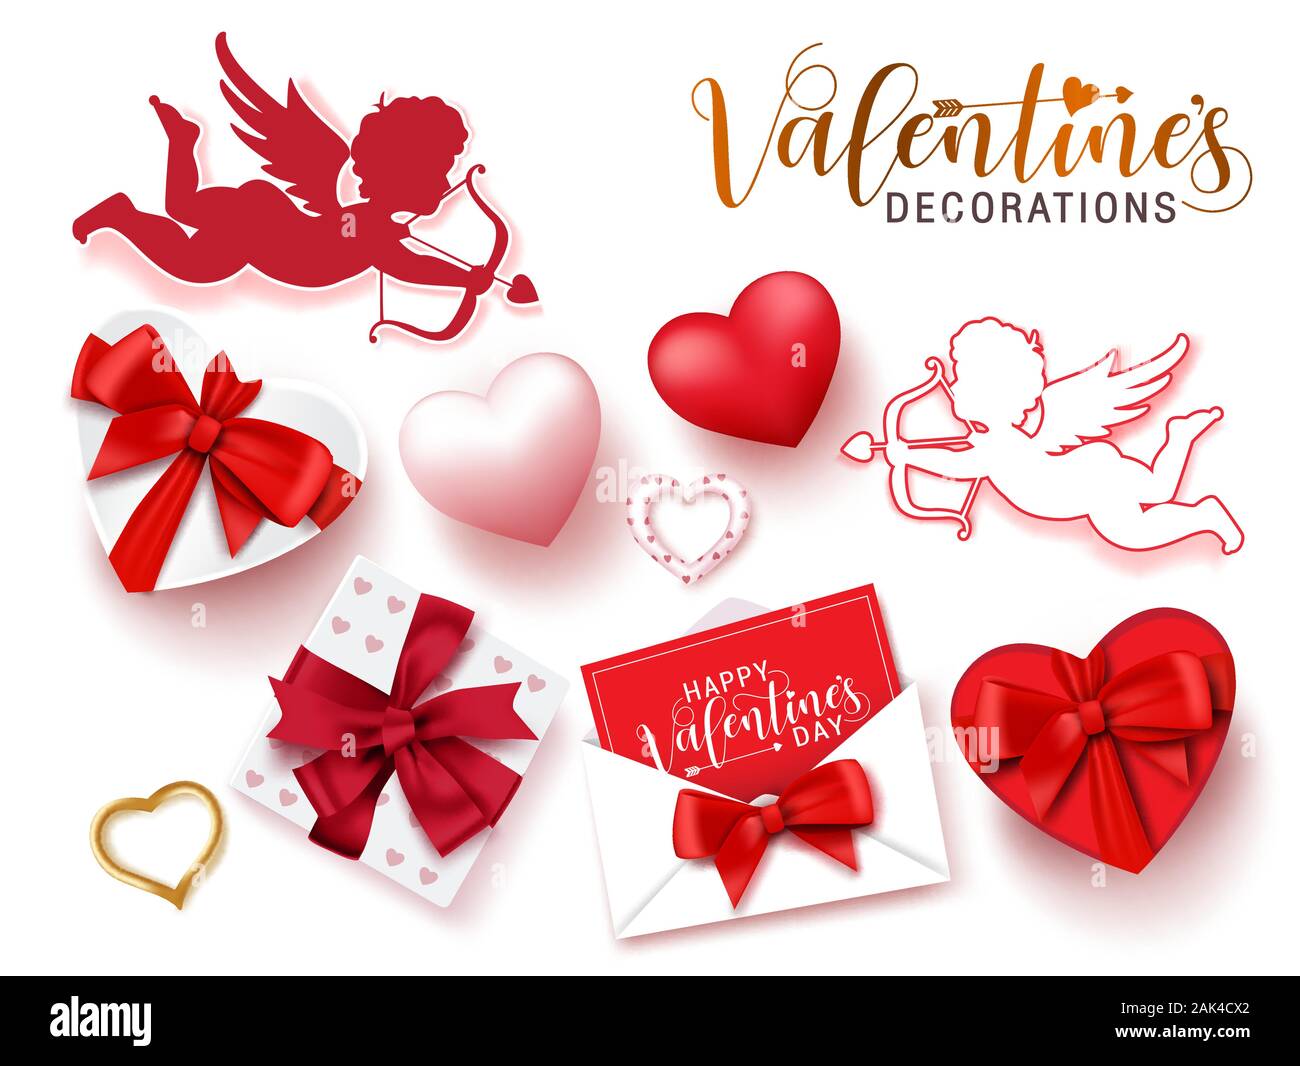 Decoraciones de San Valentín vector set. El día de San Valentín decoración  de cupido, regalos, cartas y corazones para san valentín colección de  elementos aislados en blanco Imagen Vector de stock -